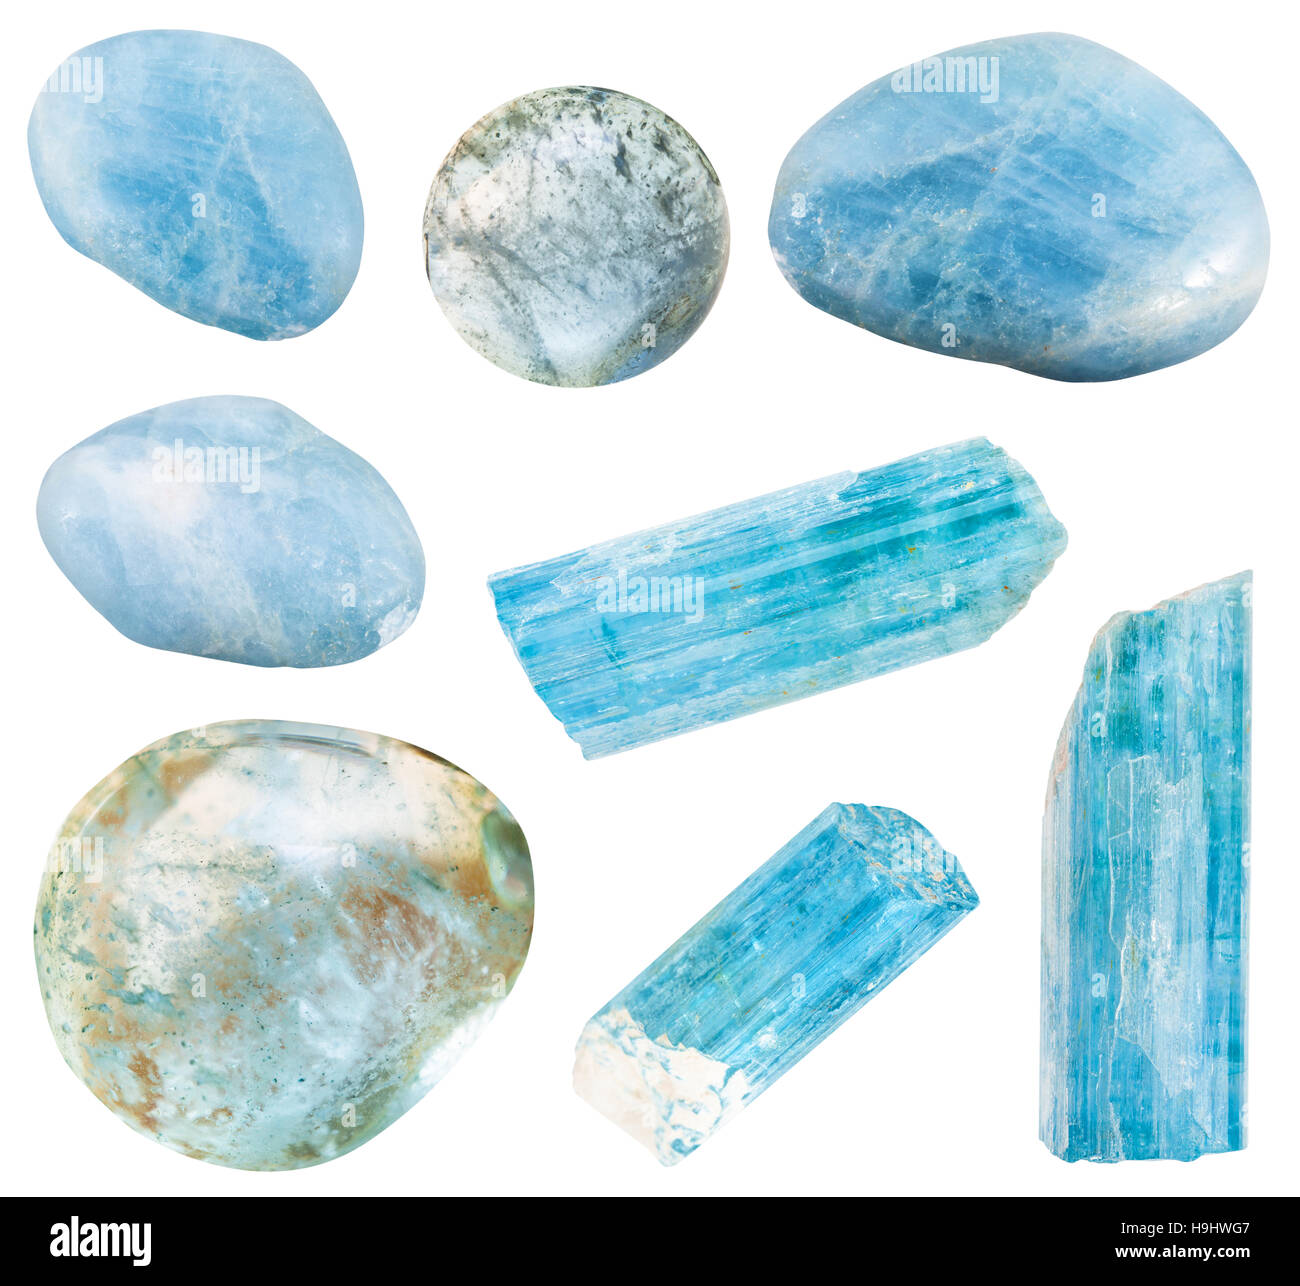 Reihe von verschiedenen Aquamarin (blaue Beryl) mineralische Kristalle und polierte Edelsteine isoliert auf weißem Hintergrund Stockfoto